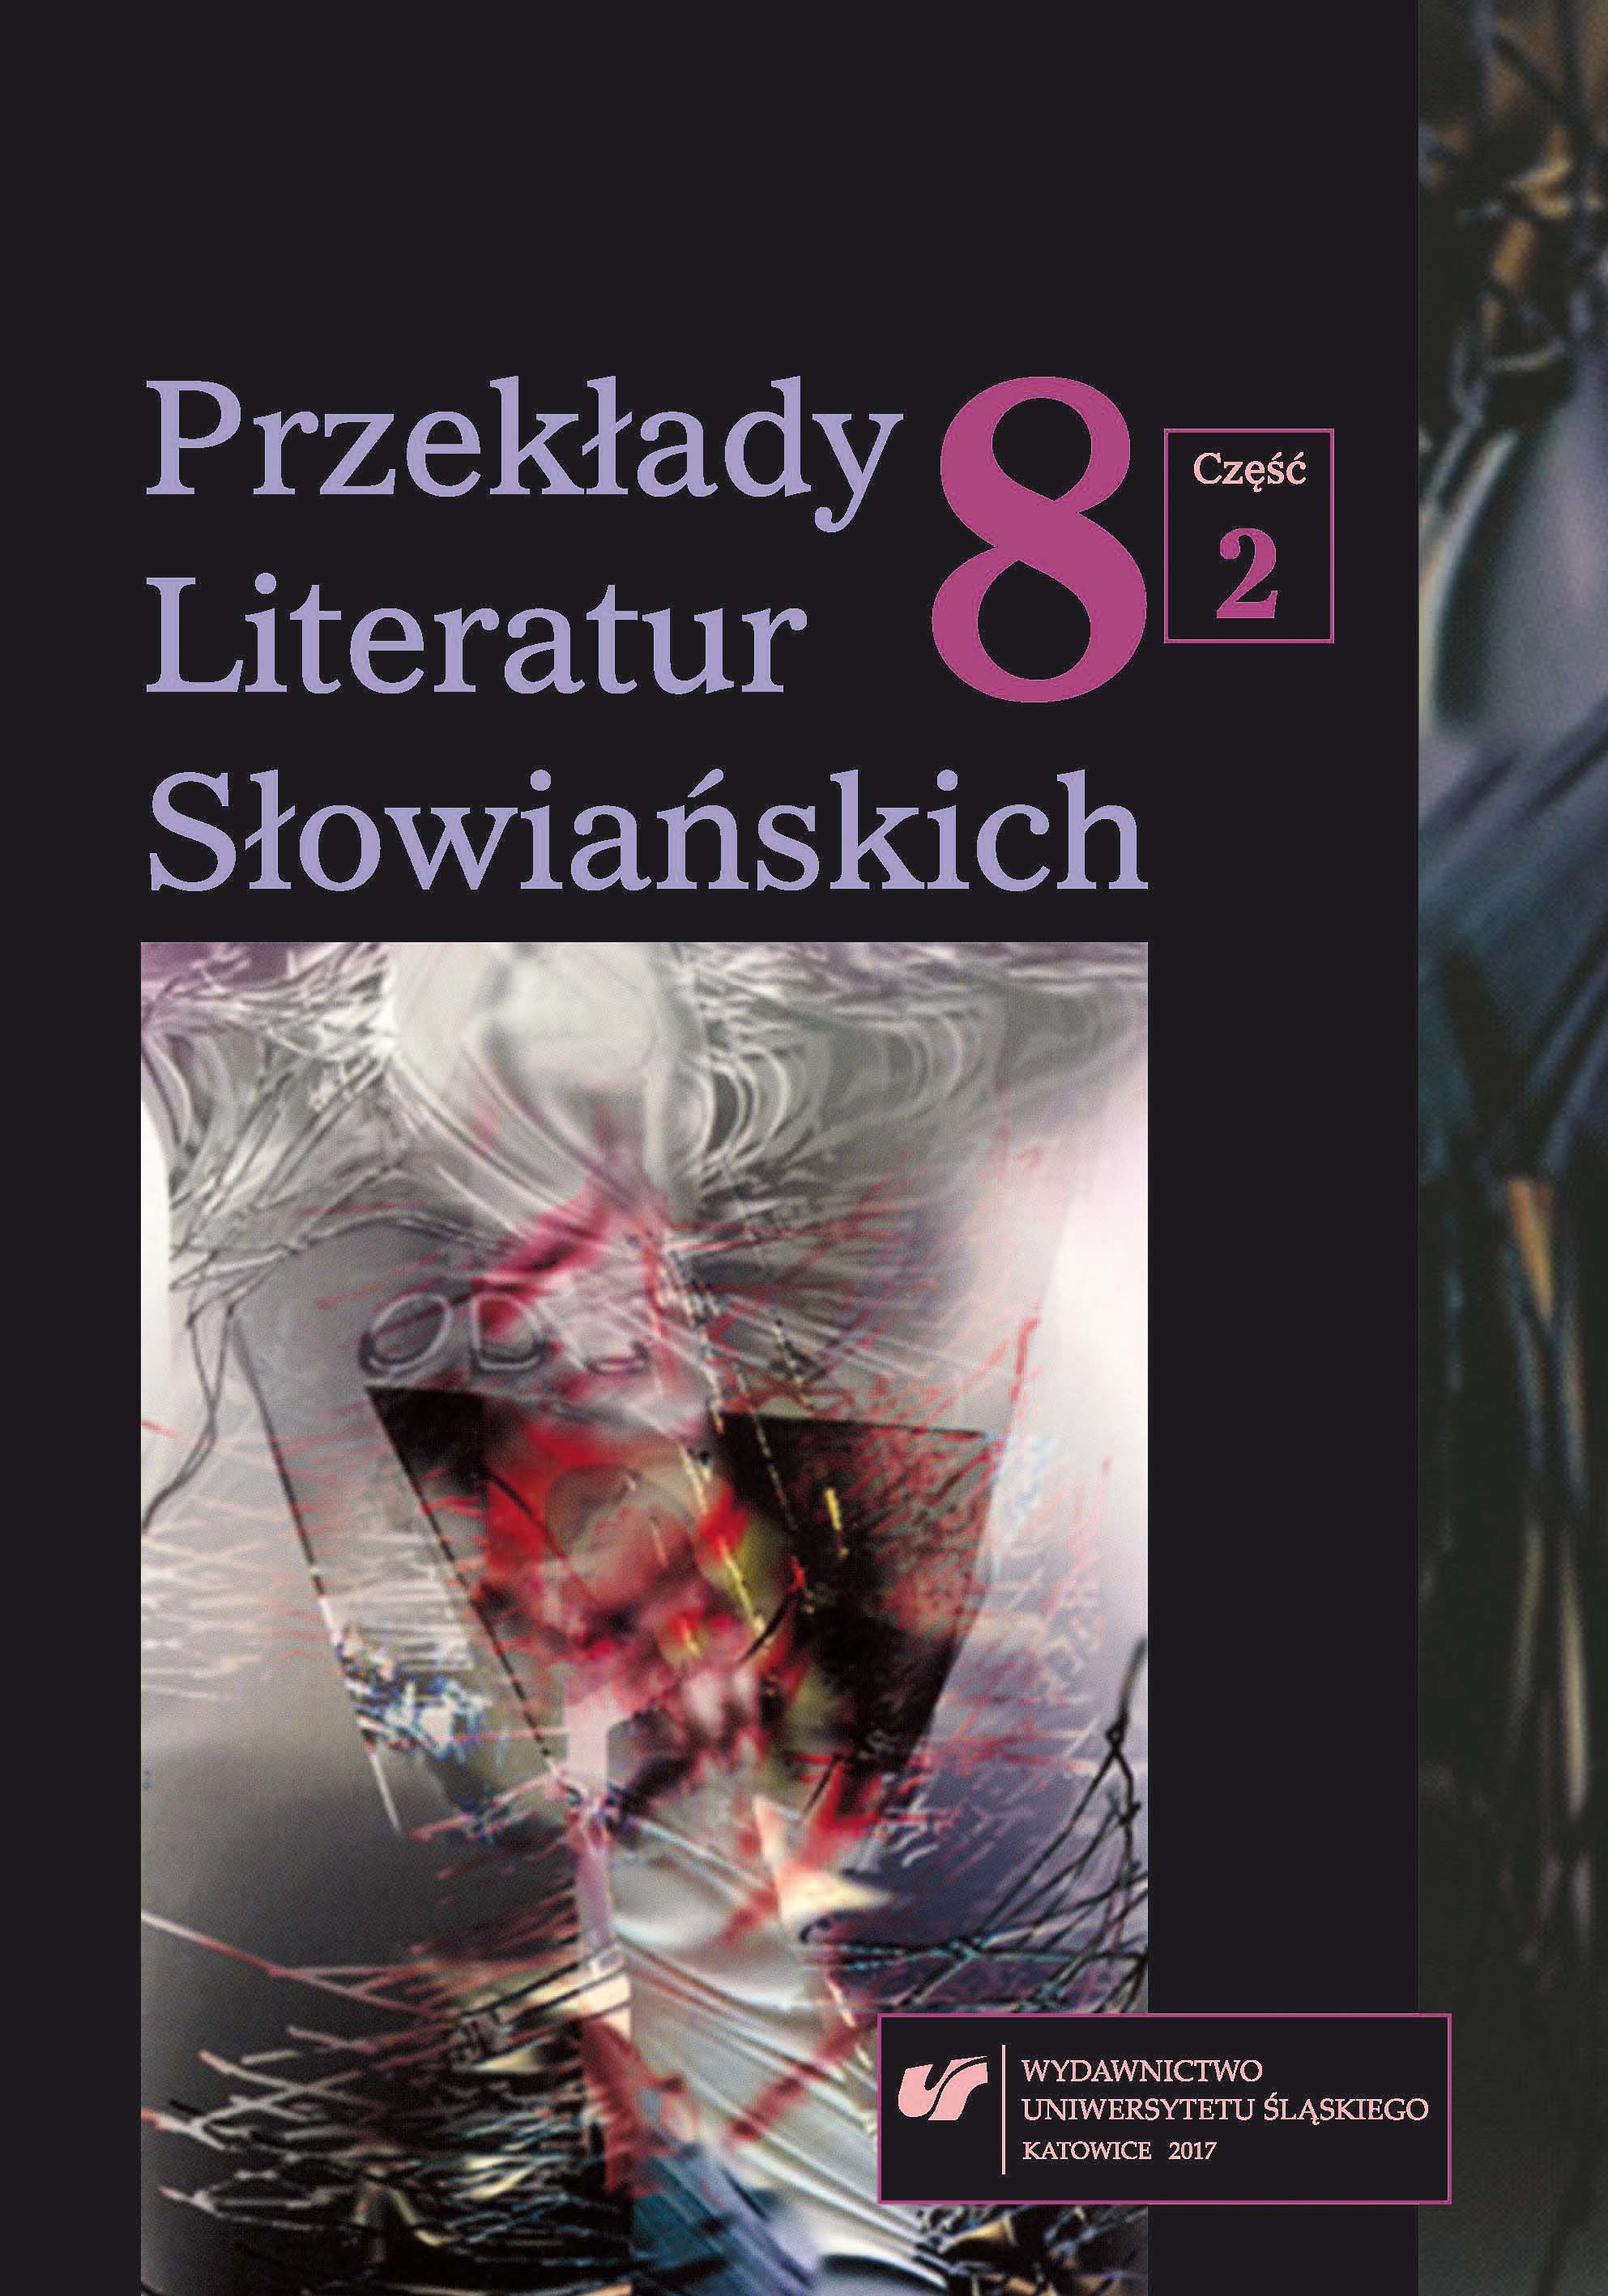 Bibliografia przekładów literatury chorwackiej w Polsce w 2016 roku